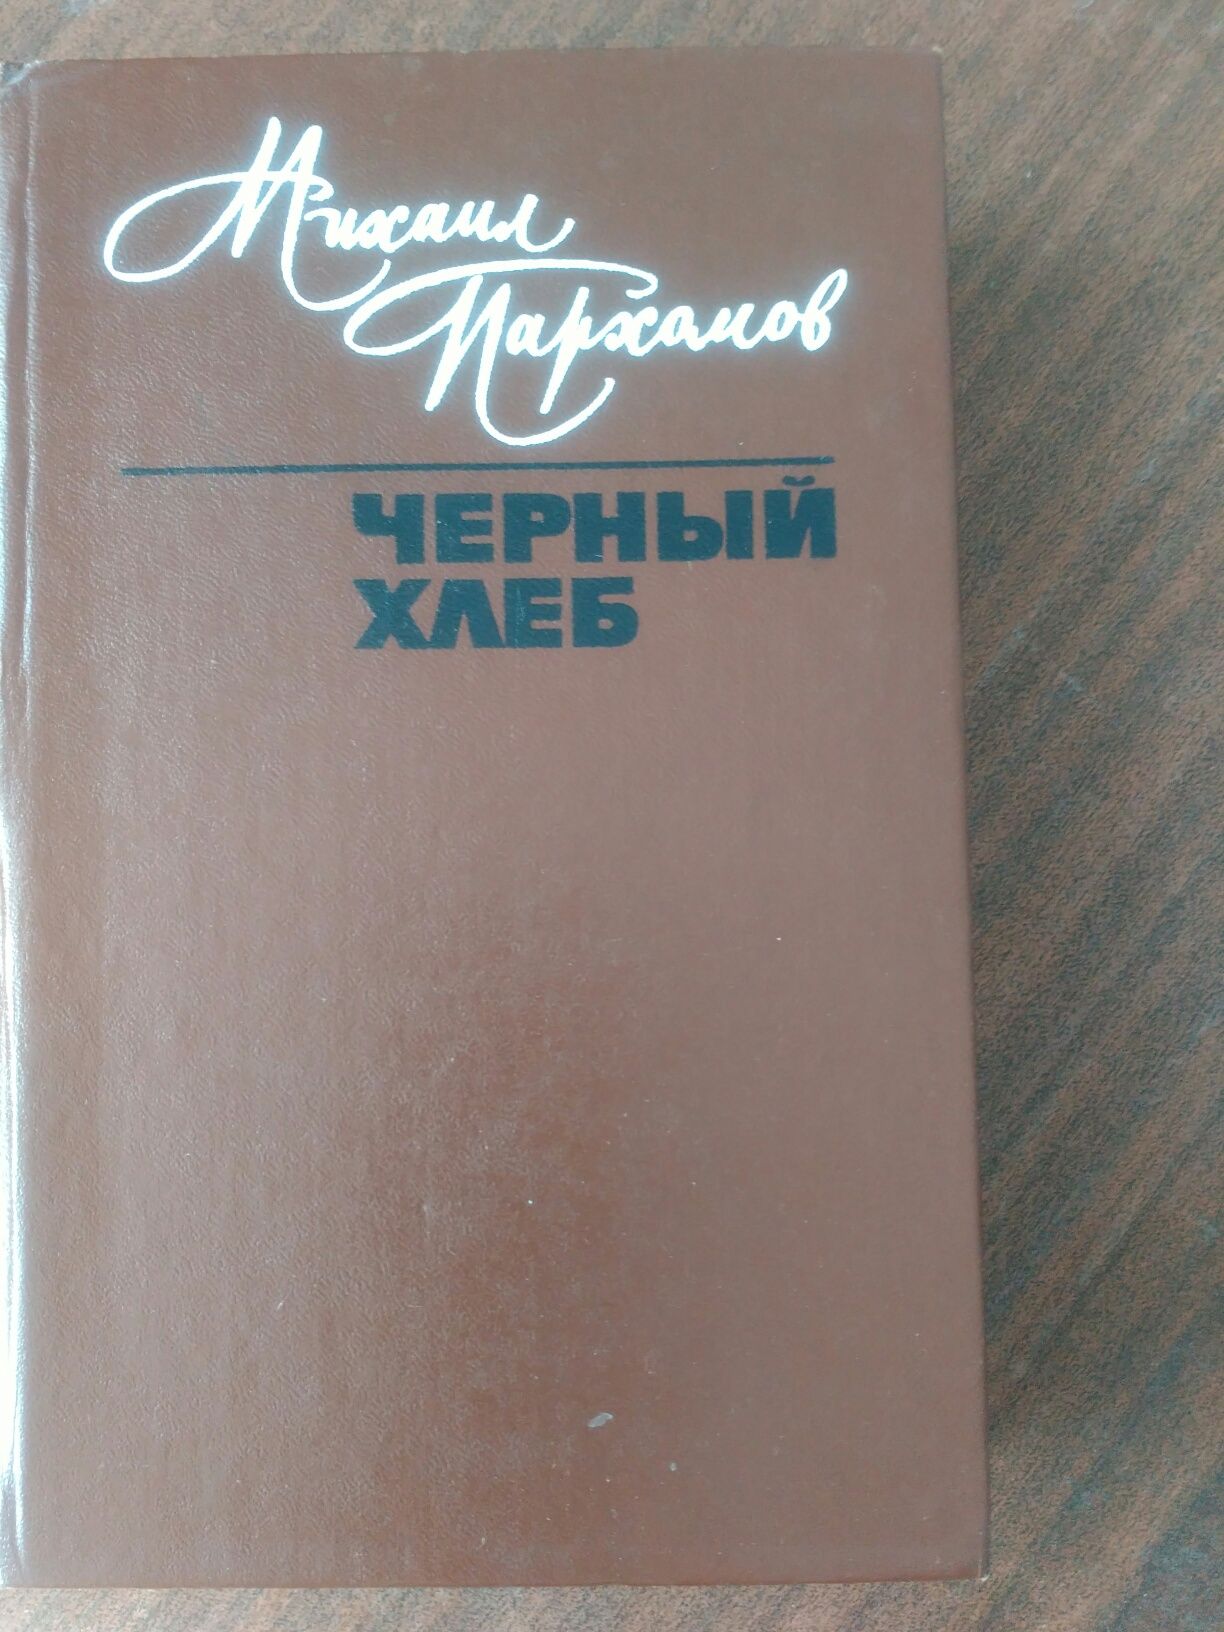 Книга М.Пархомов"Черный хлеб"